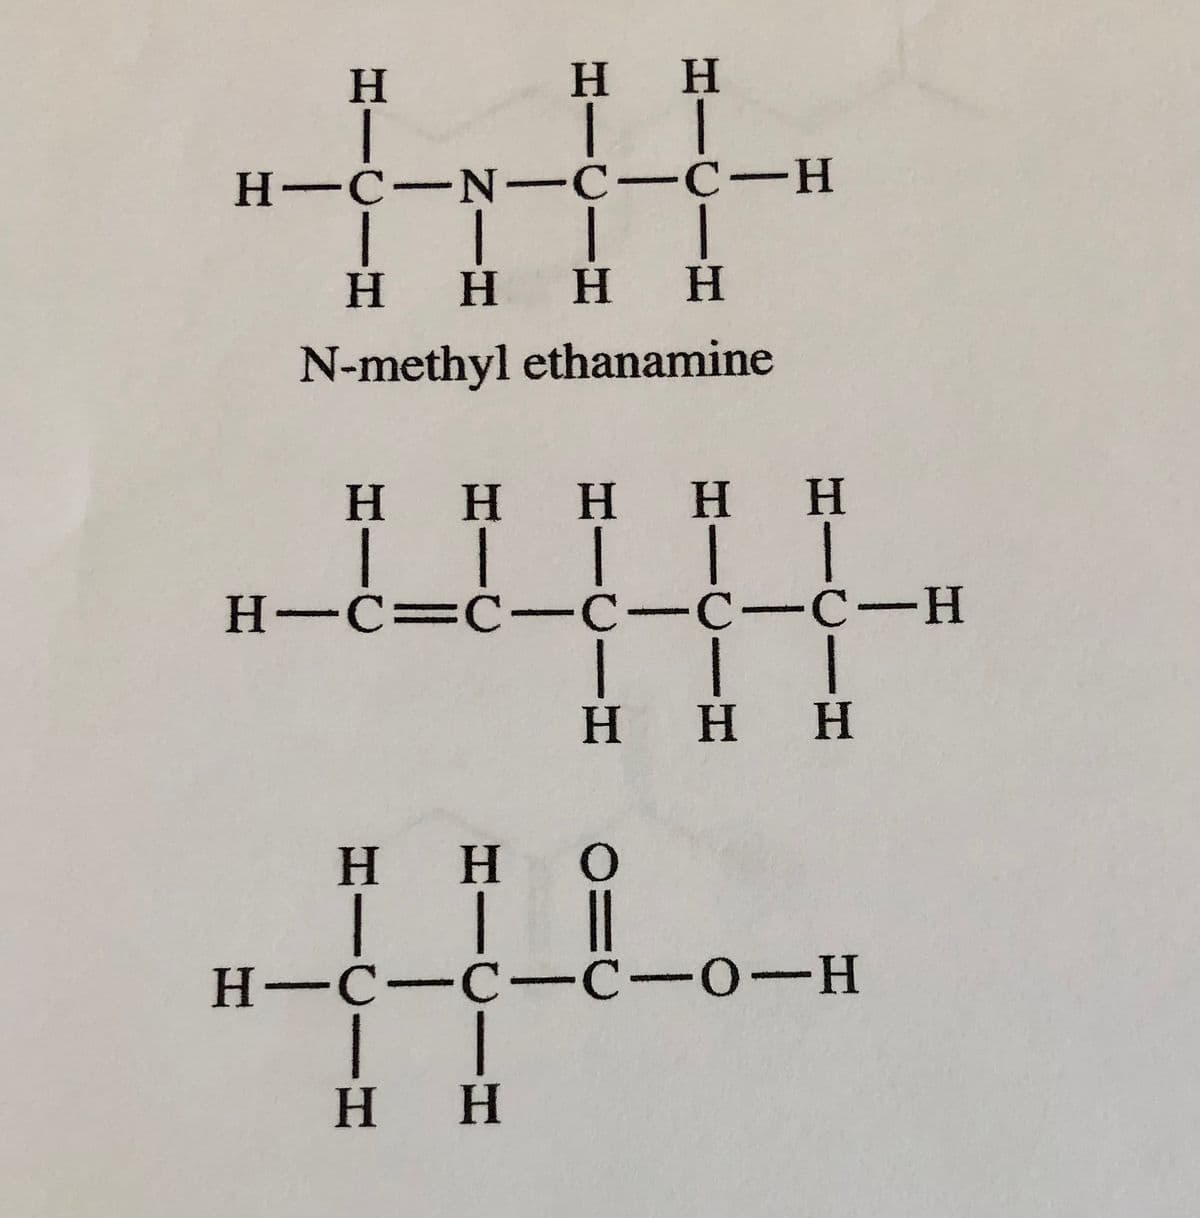 Η
|
Η Η
| |
H-C-N-C-C-H
| | |
Η Η Η
Η
|
Η
N-methyl ethanamine
Η Η Η Η Η
|||||
H=C=C-C-C-C-H
| | |
Η Η Η
Η Η Ο
H-C-C-C-0-H
| |
Η Η